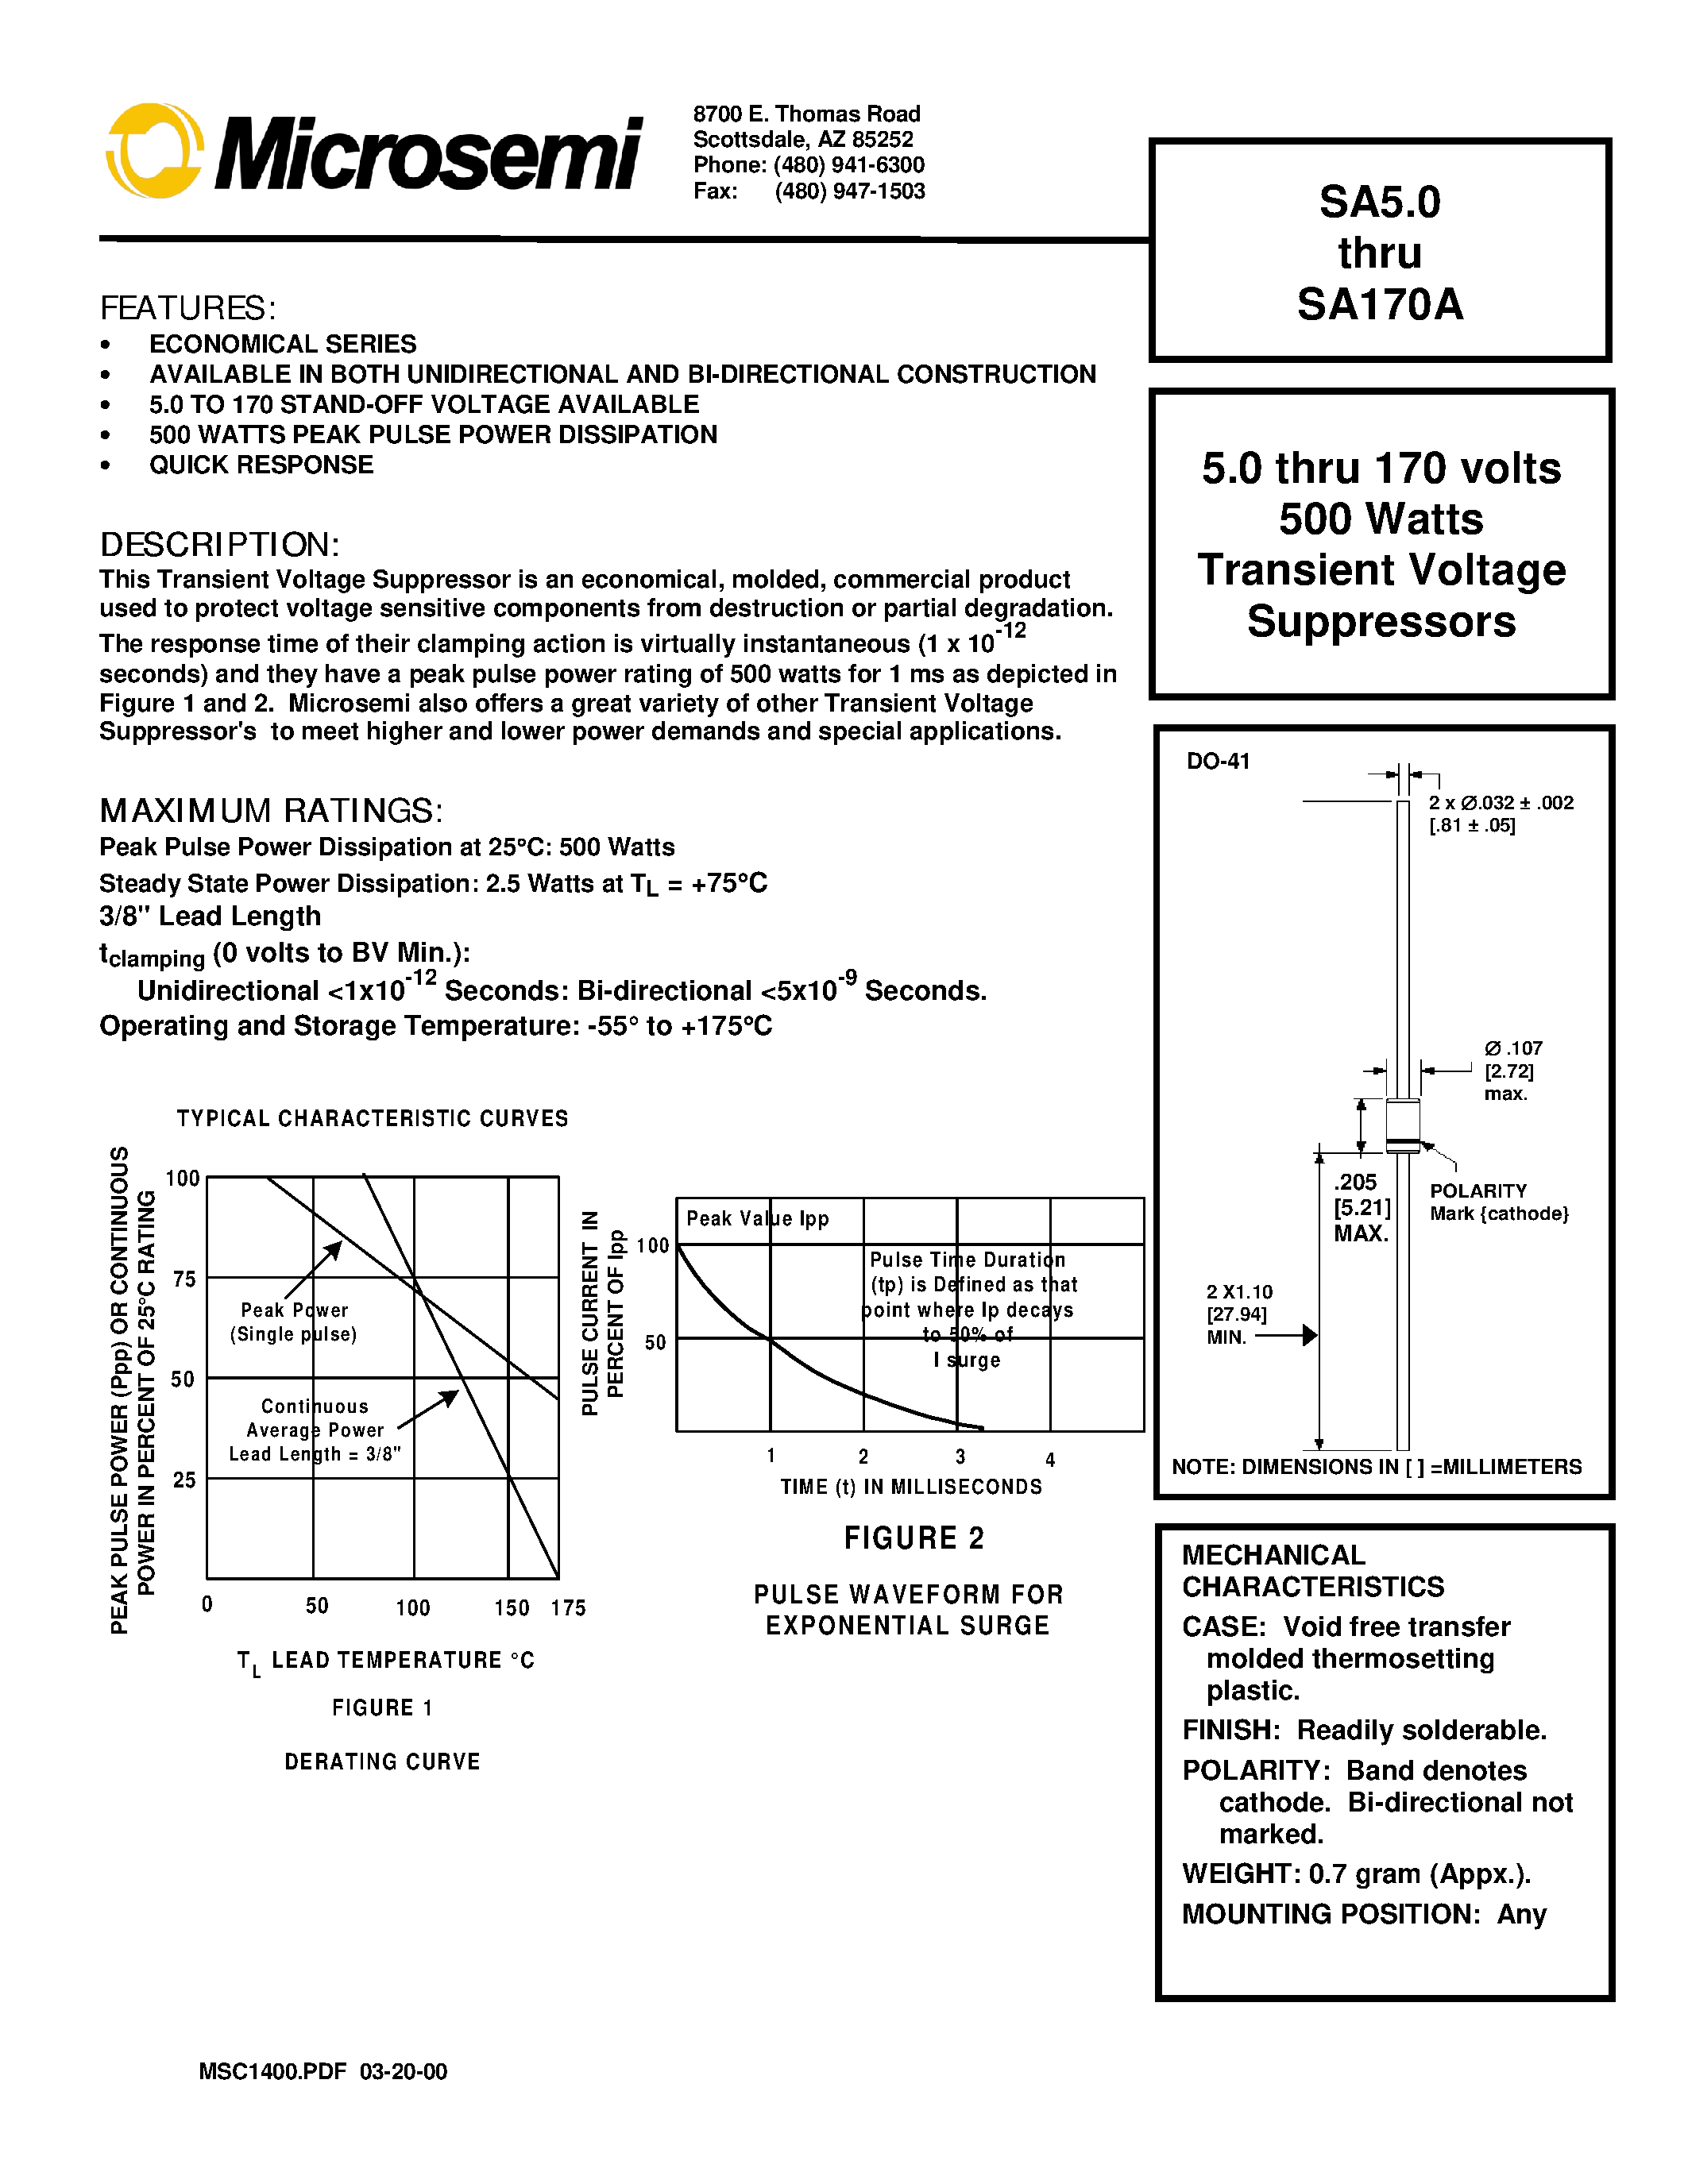 Datasheet SA100 - 5.0 thru 170 volts 500 Watts Transient Voltage Suppressors page 1